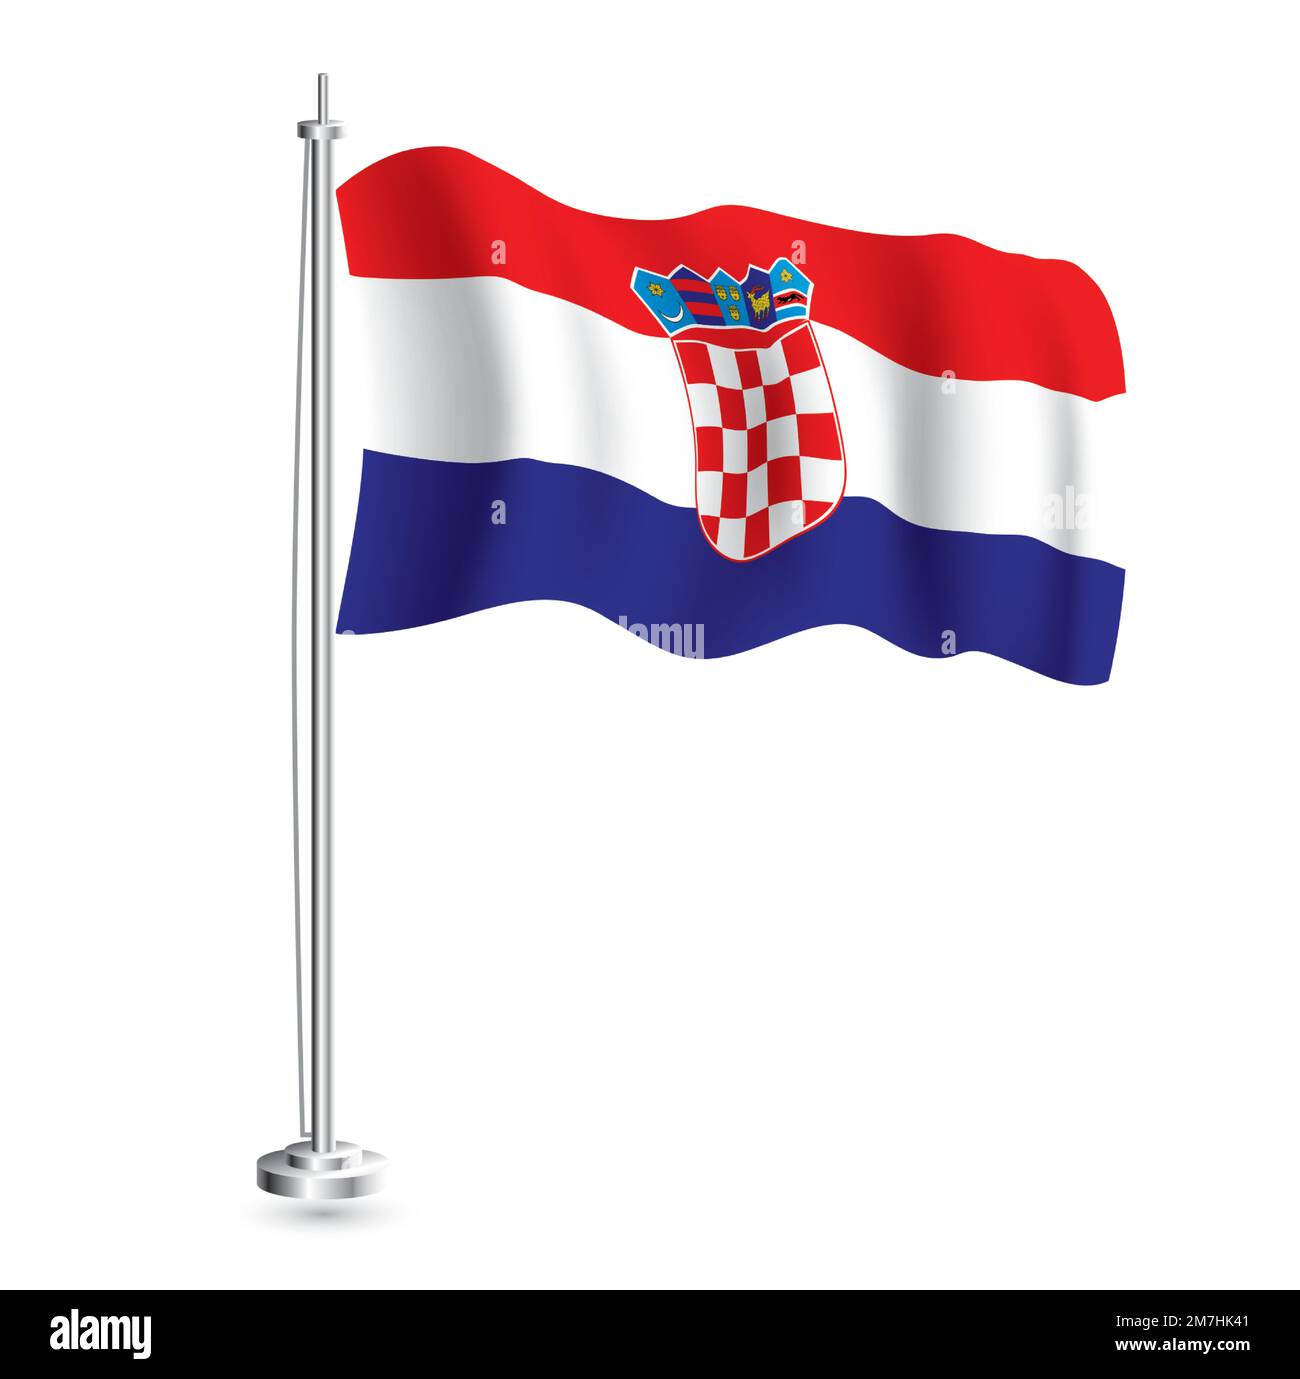 Kroatische Flagge. Isolierte realistische Wellenflagge des Landes Kroatien auf der Flaggenpole. Vektordarstellung. Stock Vektor